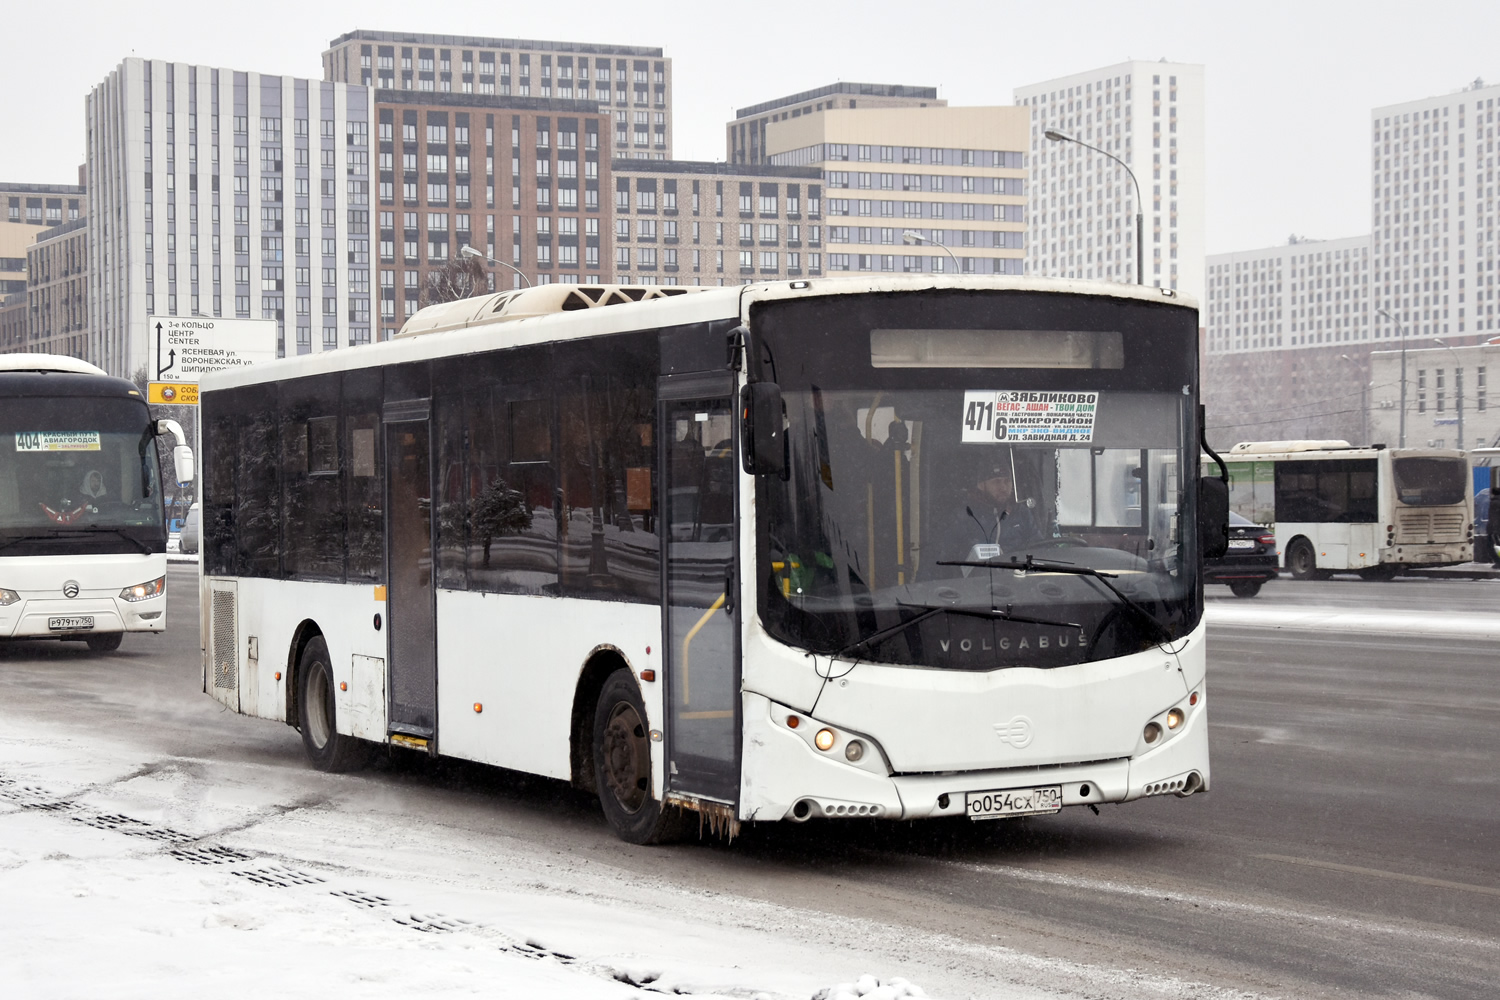 Moskevská oblast, Volgabus-5270.0H č. О 054 СХ 750